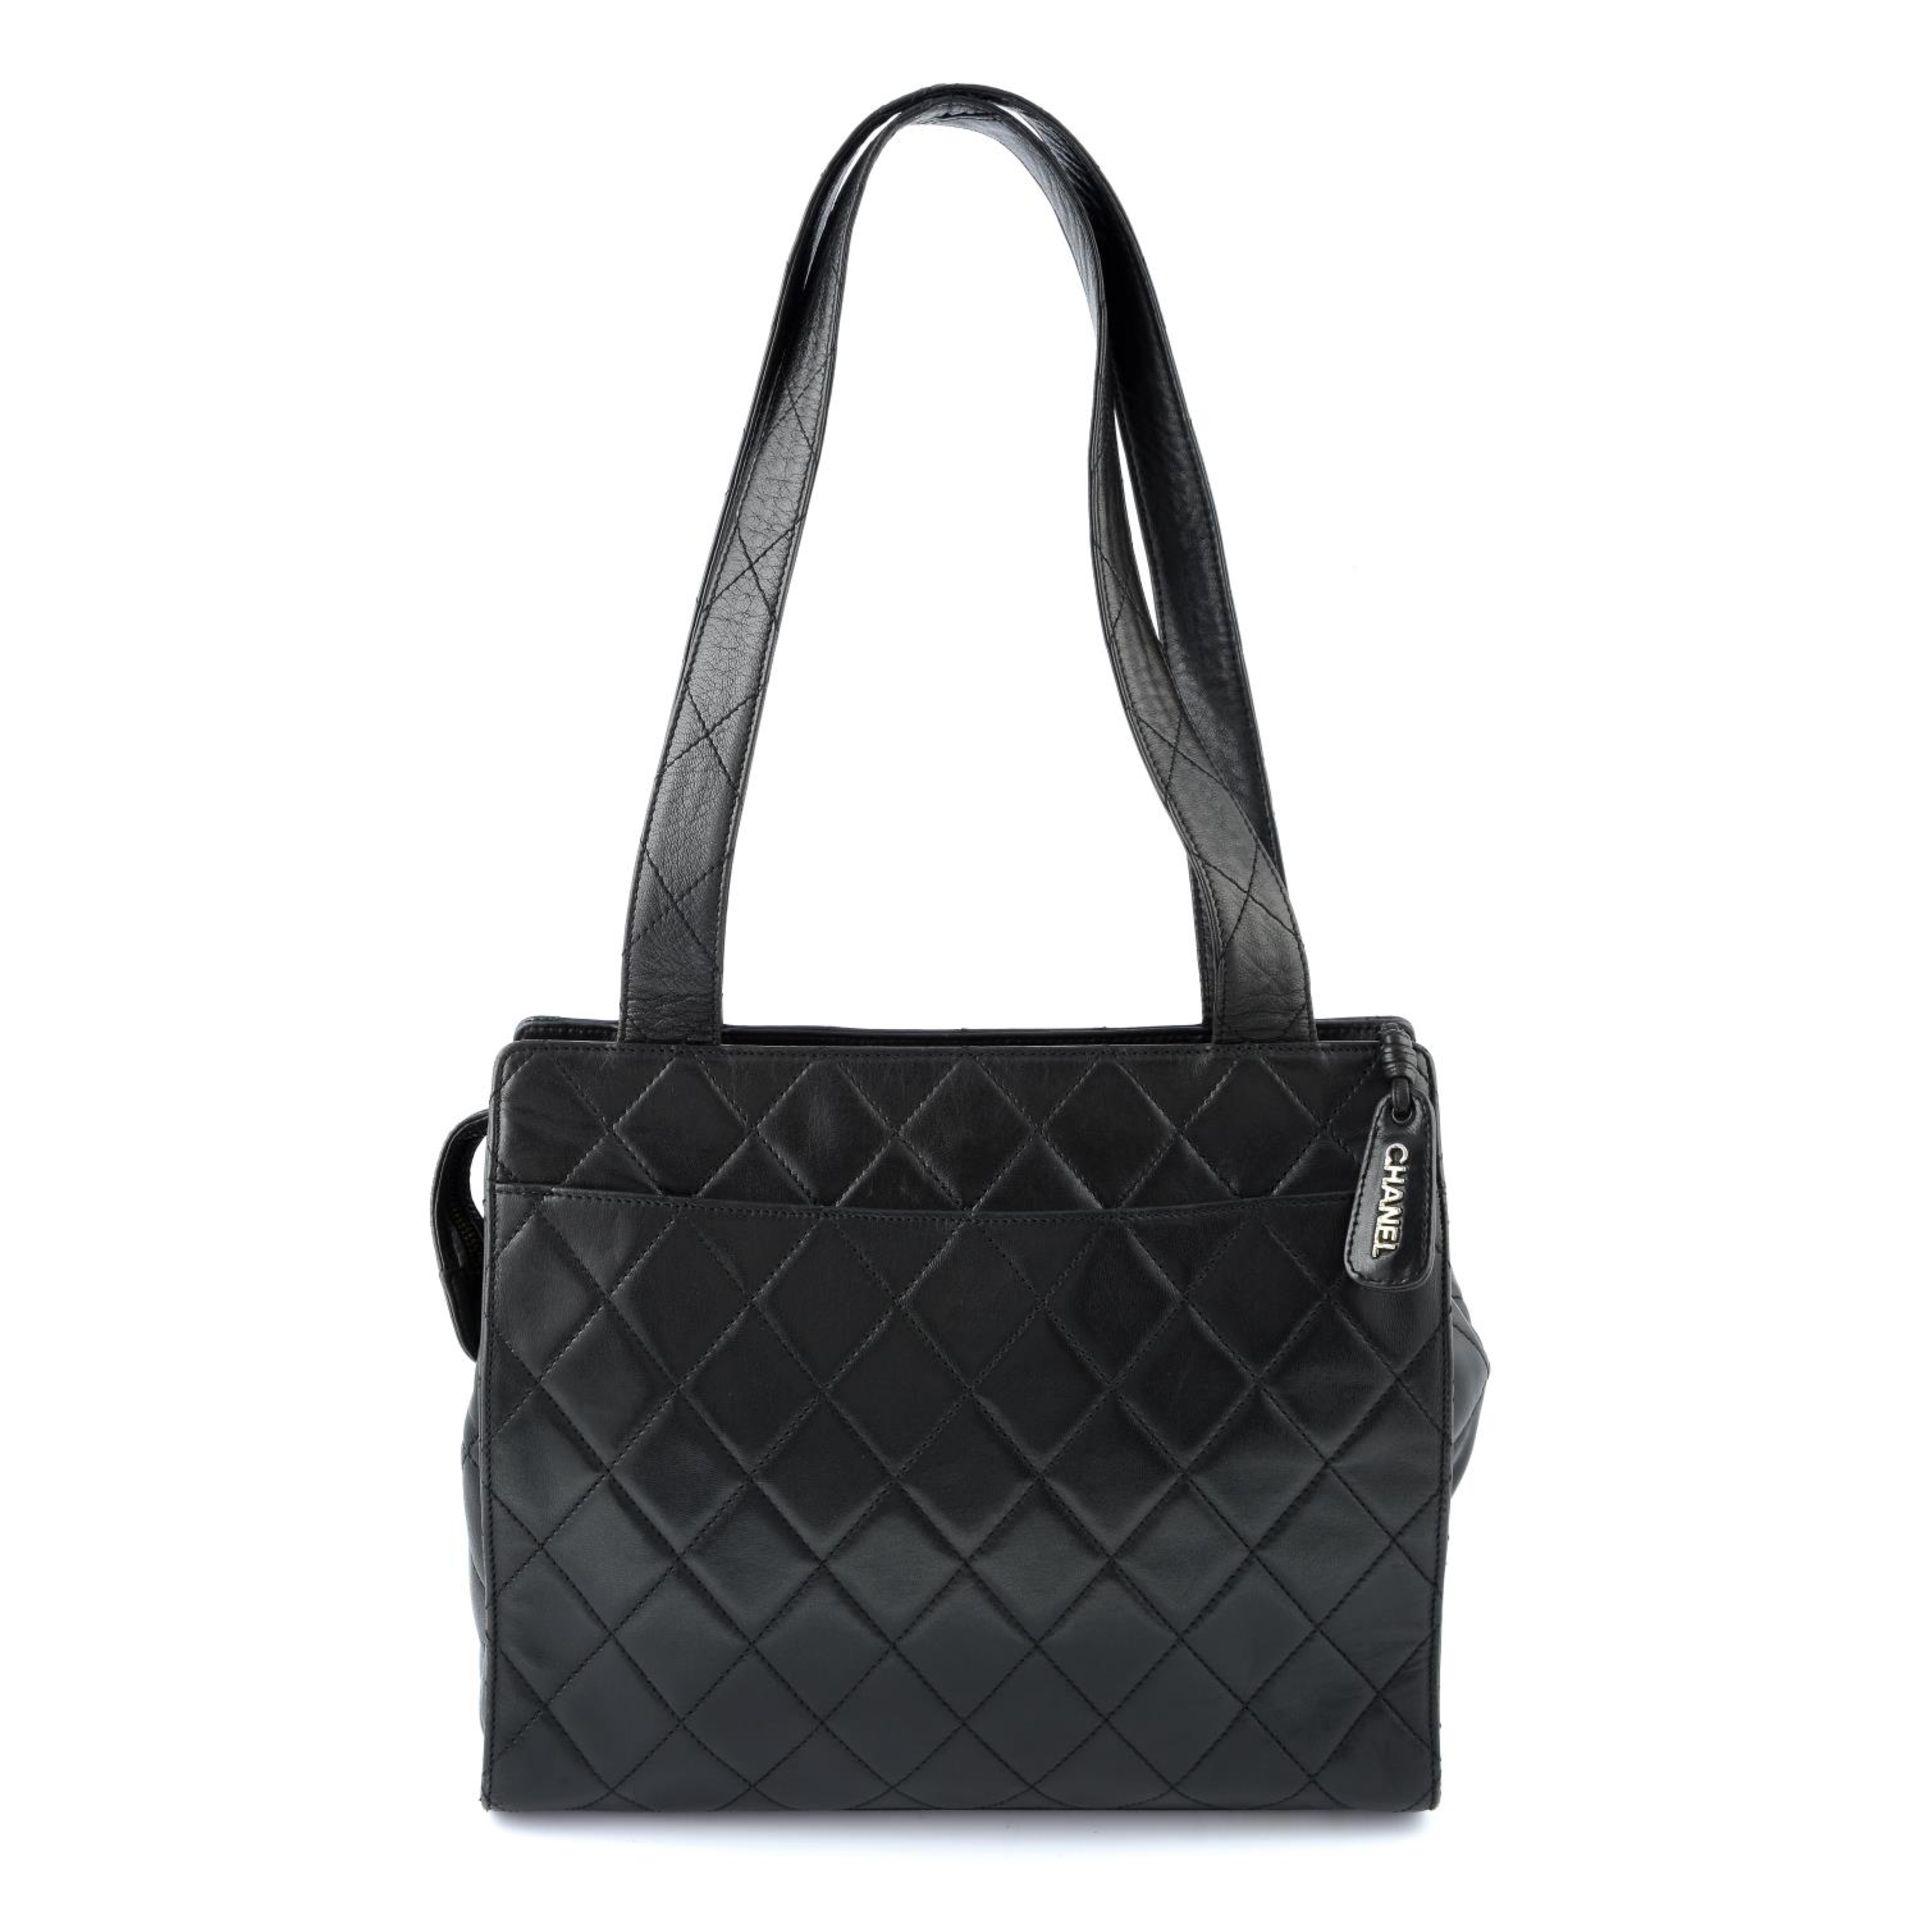 CHANEL - a black quilted leather zip handbag. - Bild 2 aus 4